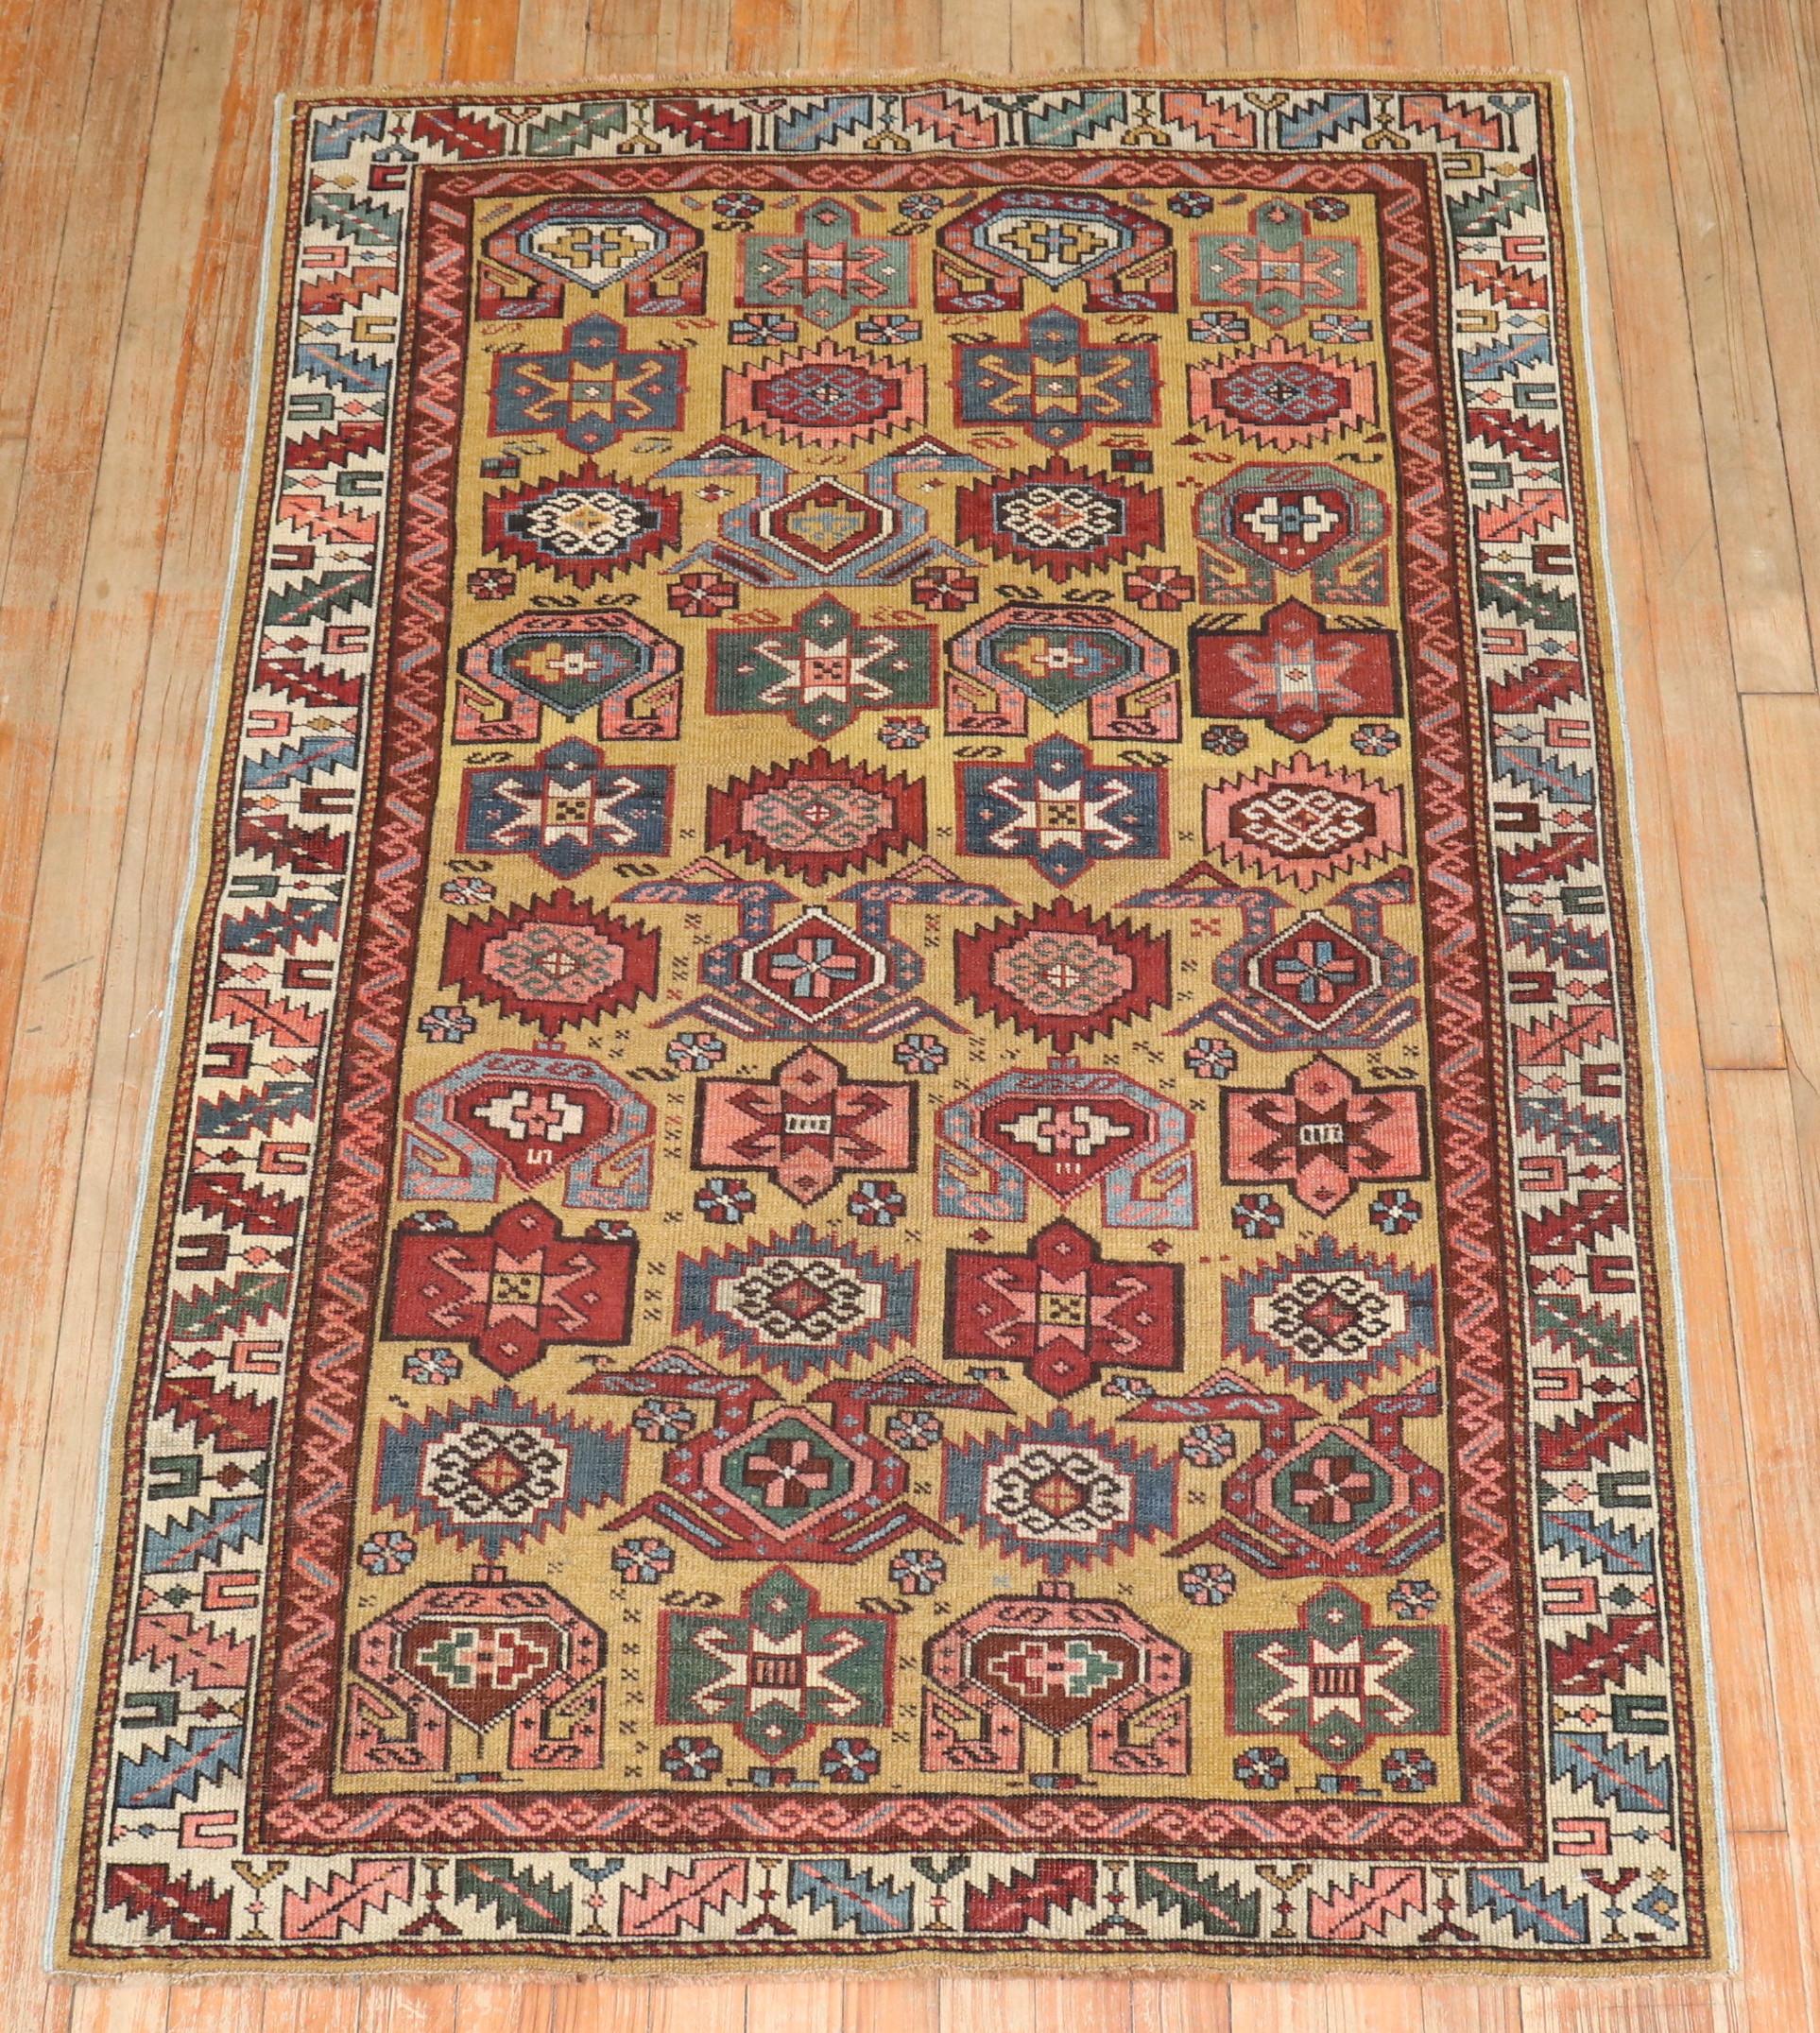 Authentique tapis Kuba caucasien de la fin du XIXe siècle, avec un fond couleur moutarde.

3'5'' x 5'1''